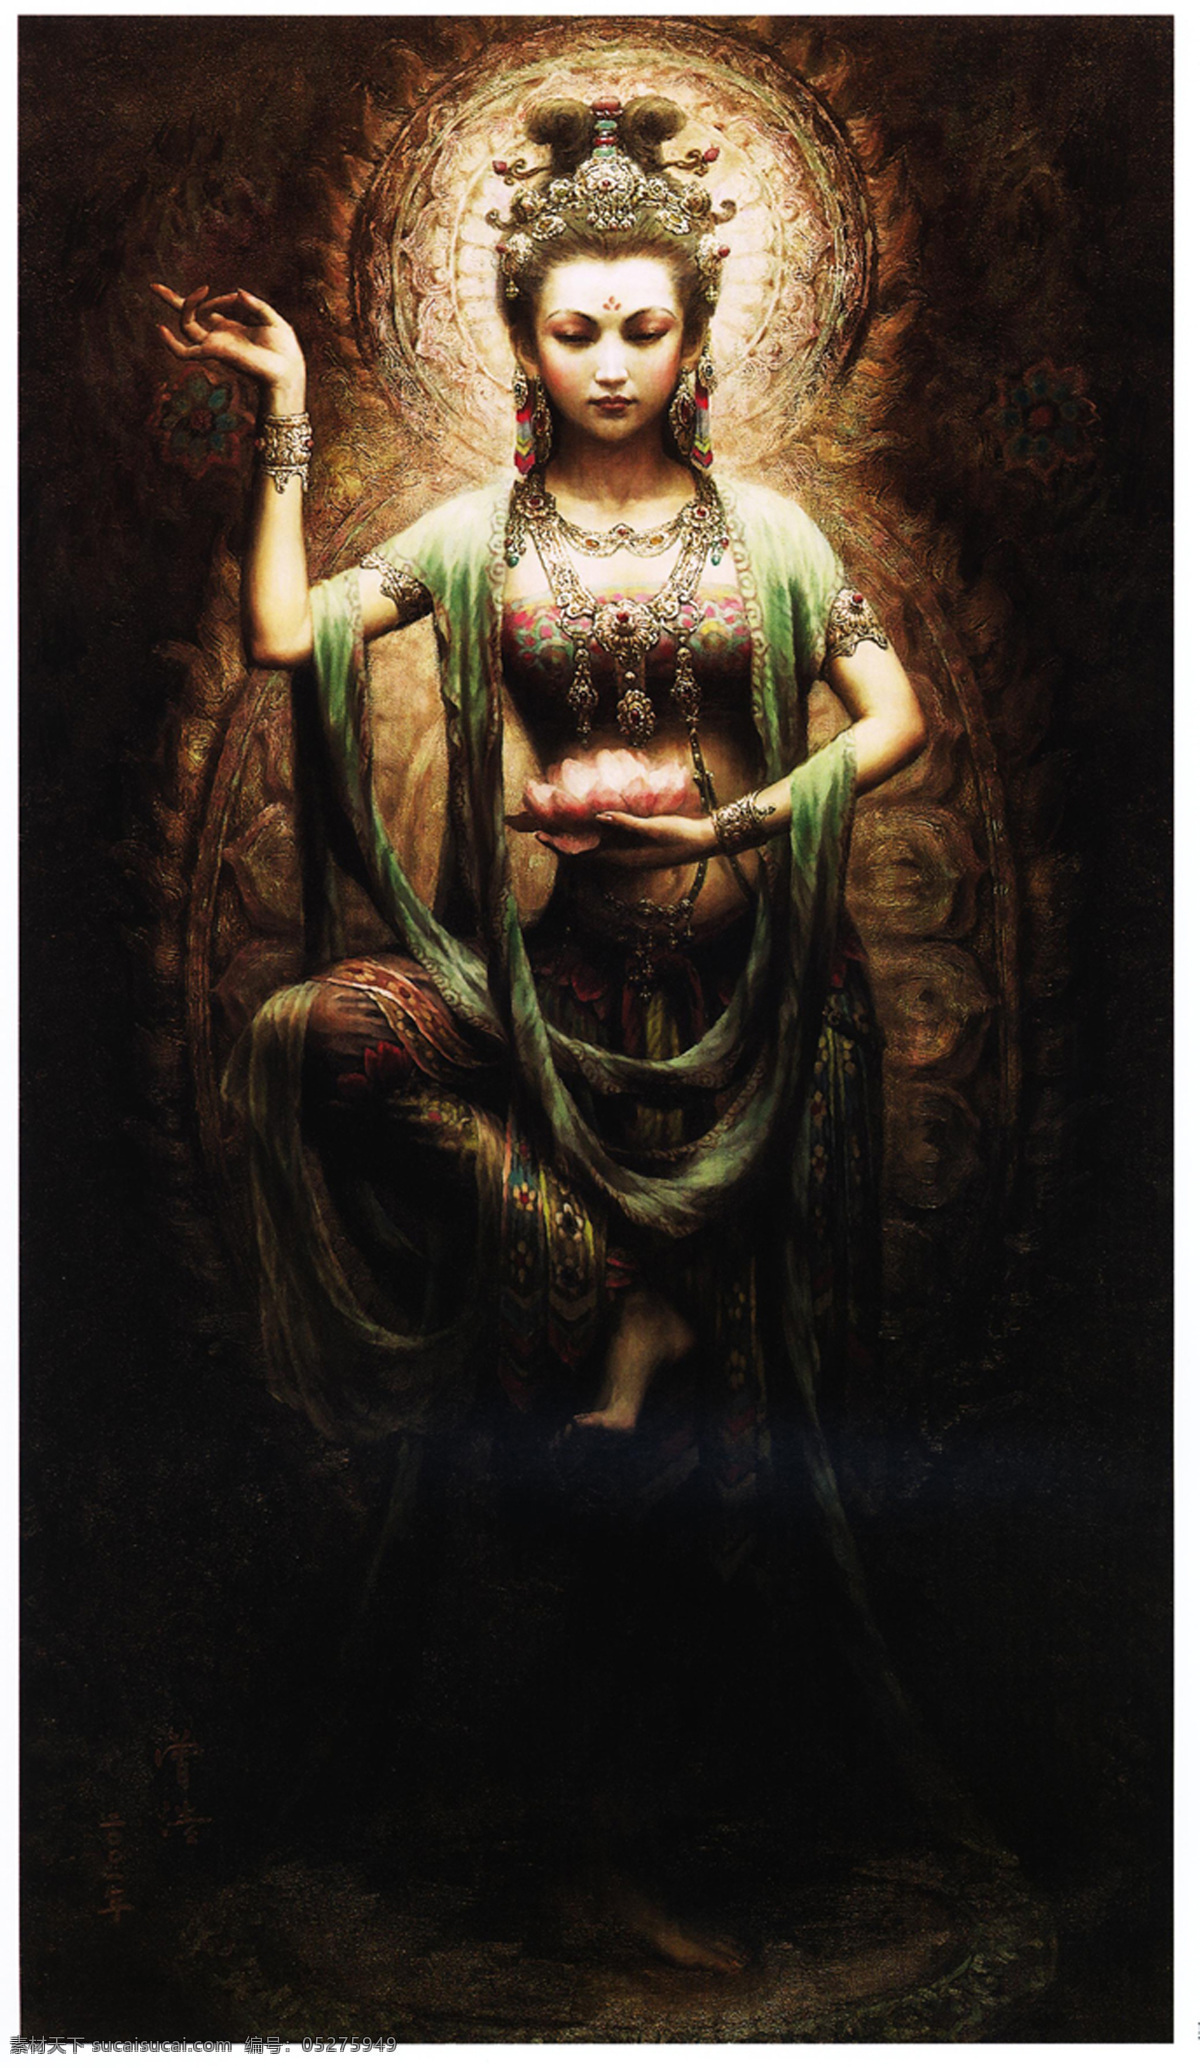 敦煌美女 敦煌 美女 绘画 艺术 油画 唯美的 中国 古典 文化艺术 绘画书法 设计图库 300